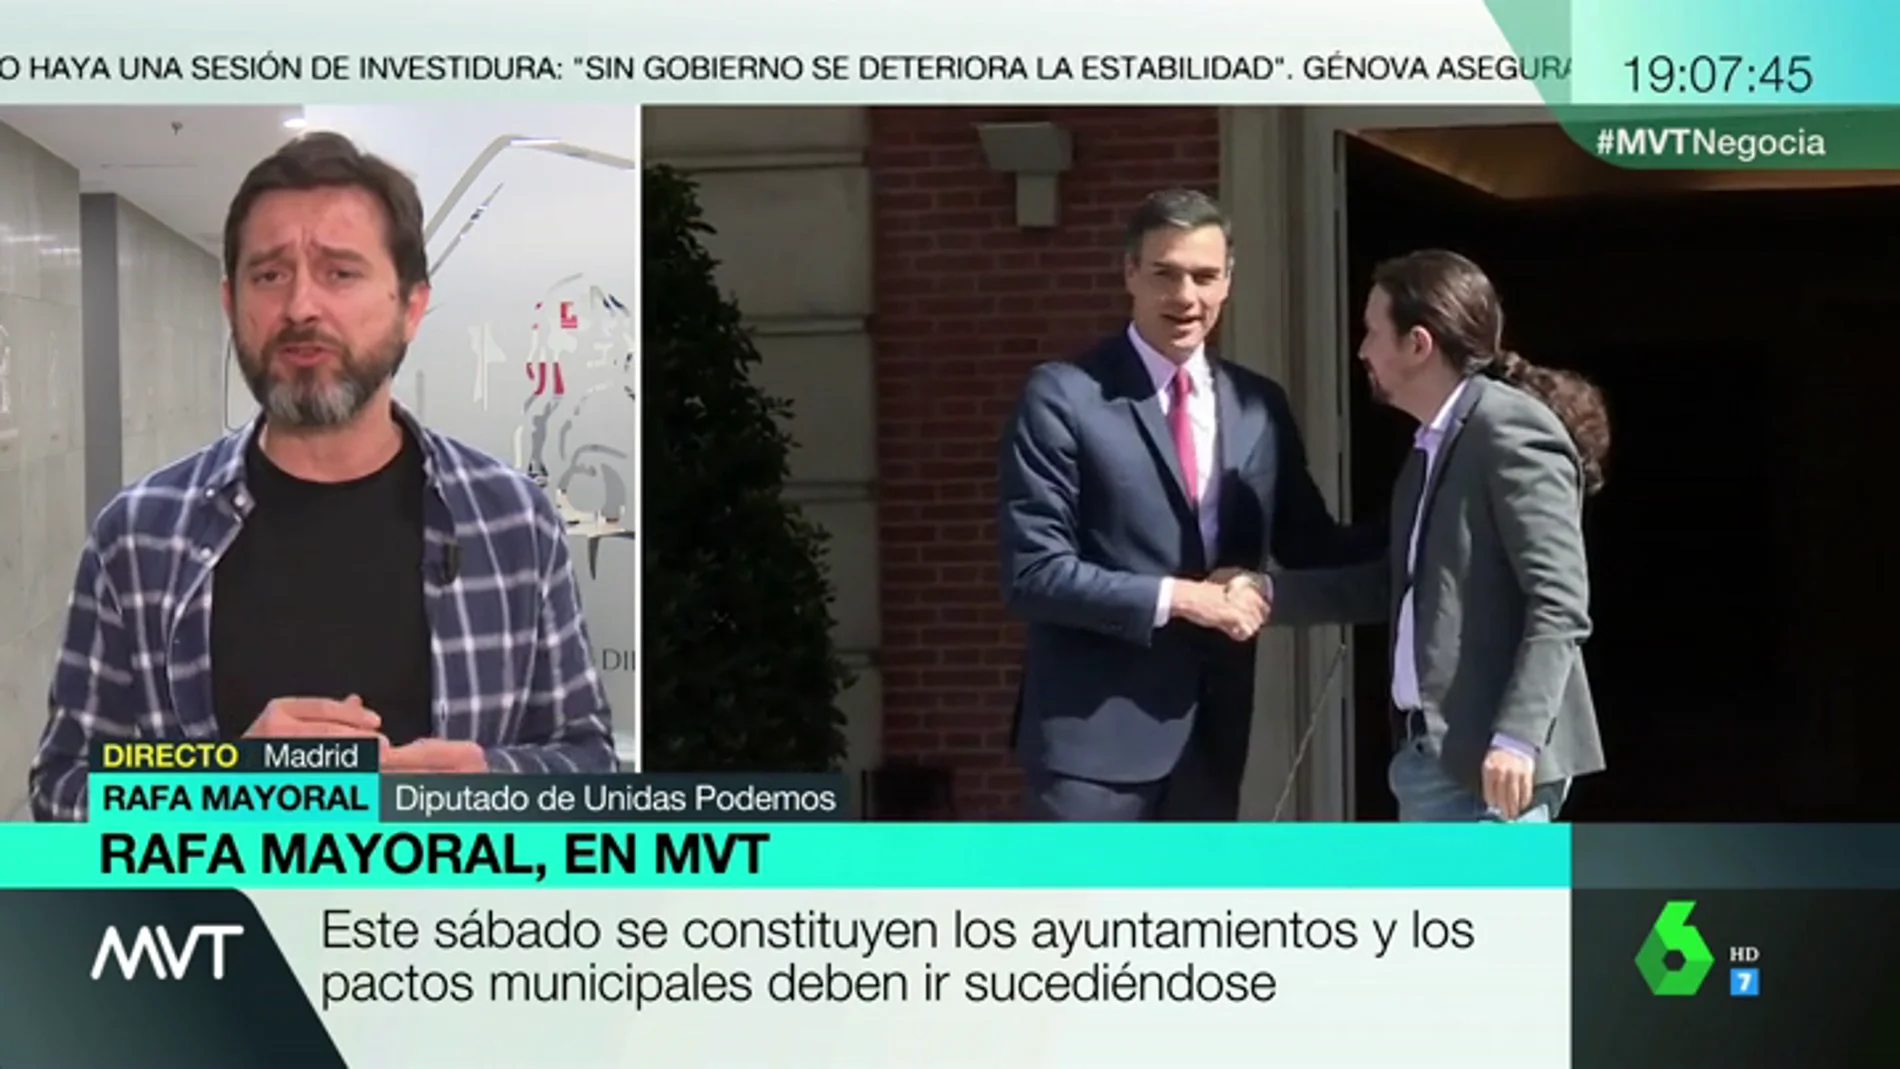  Rafael Mayoral (Unidas Podemos): "No me cabe en la cabeza que el PSOE pueda gobernar en solitario, con 123 diputados y sin hablar con nadie"